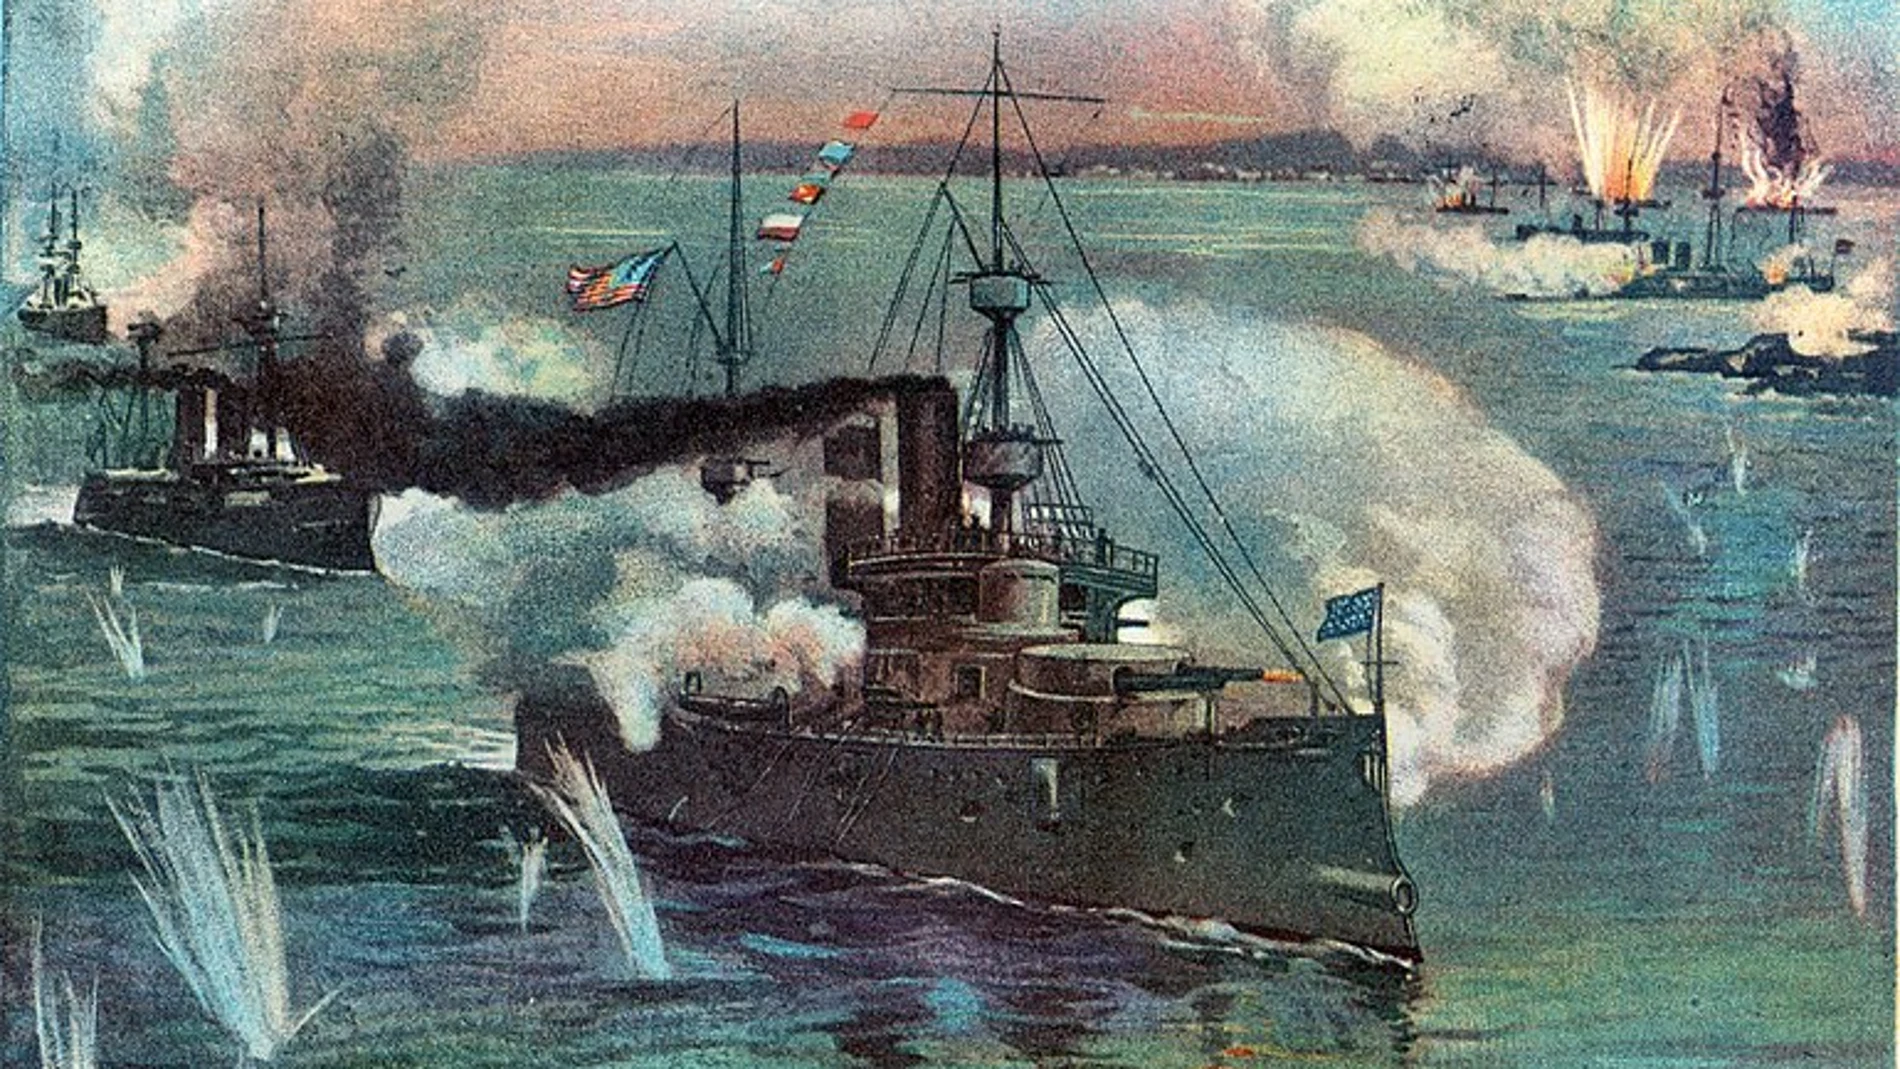 Ilustración del editor Murat Halstead sobre la batalla de Manila enla que aparece el buque norteamericano Olympia